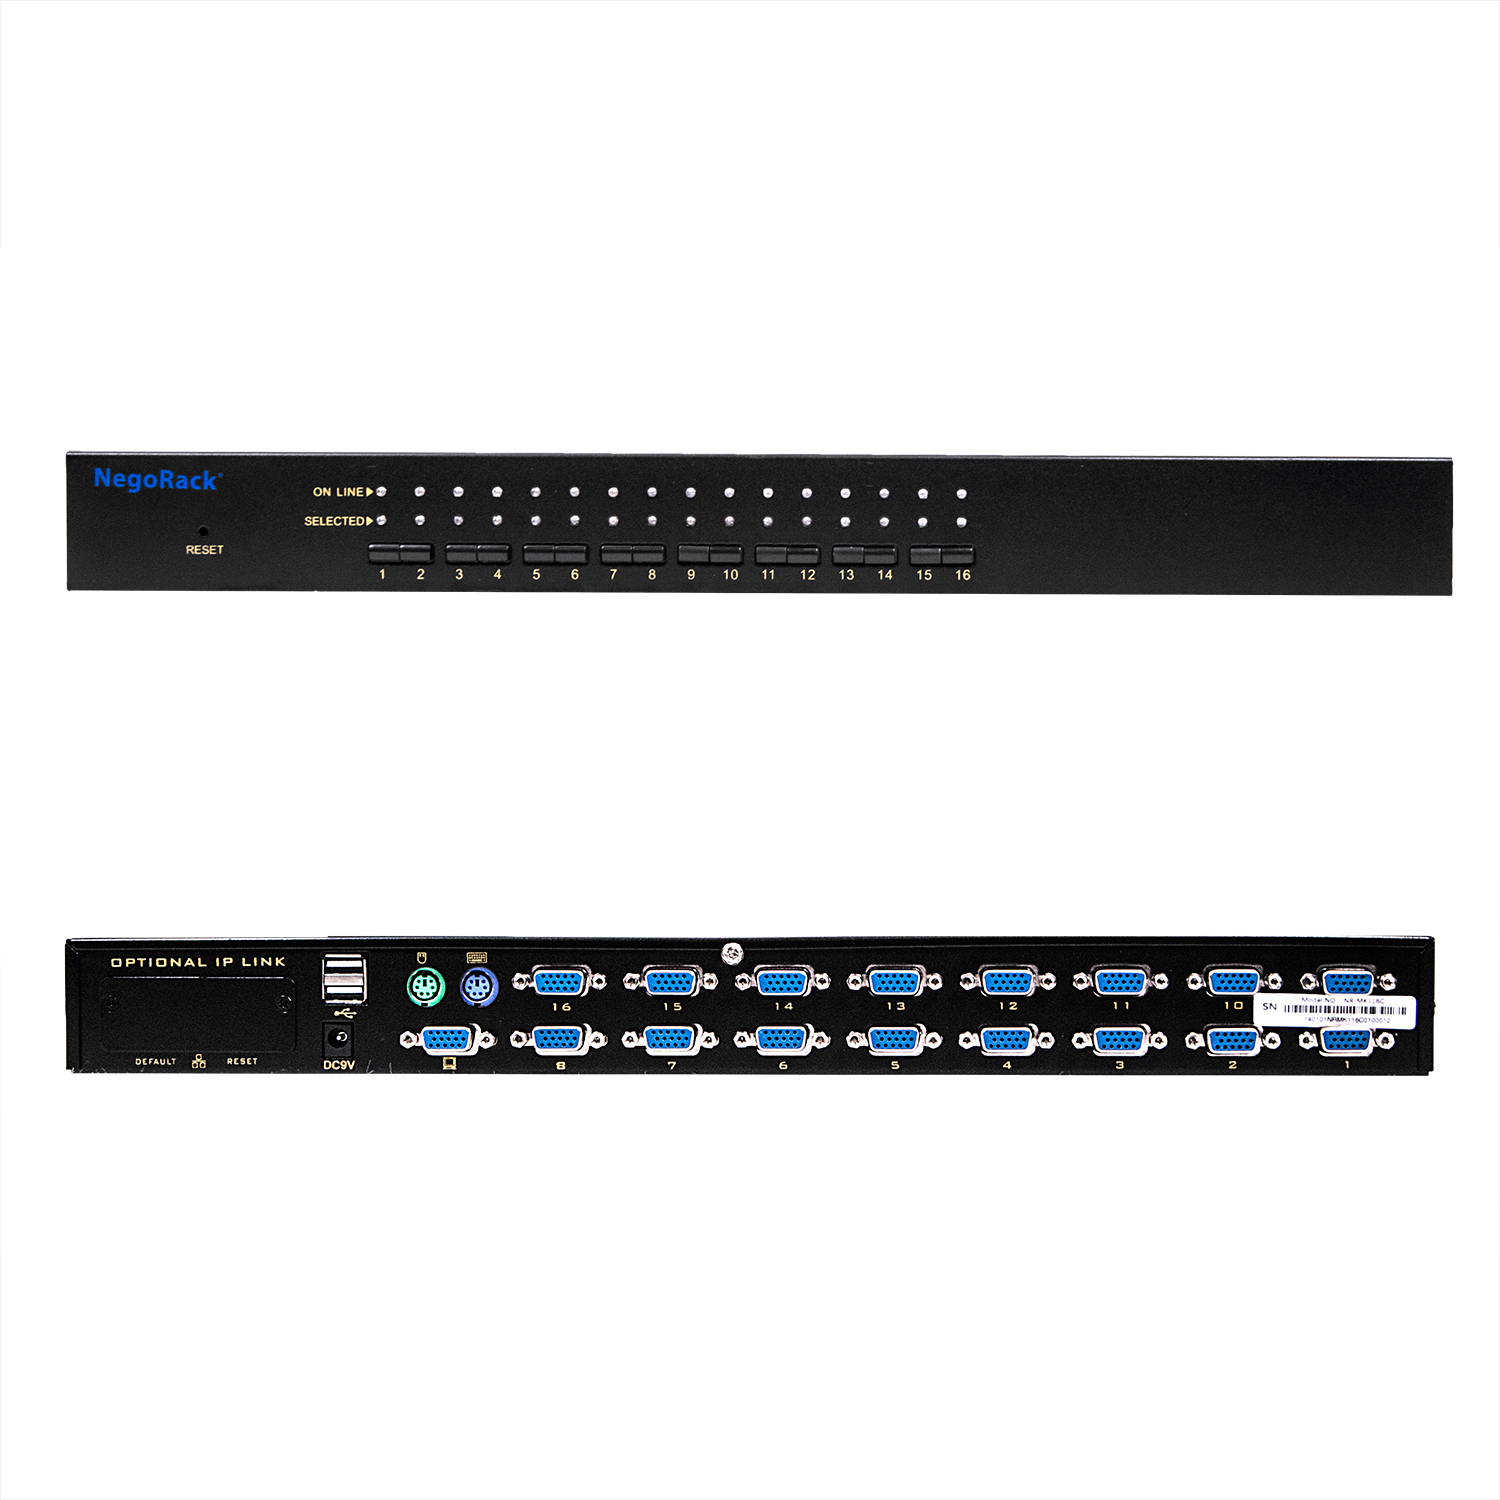 Переключатель KVM NR-MK116C  rev2, 19"rackmount, 1U, PS/2&USB, 16 портов, слот для IP модуля, Negorack